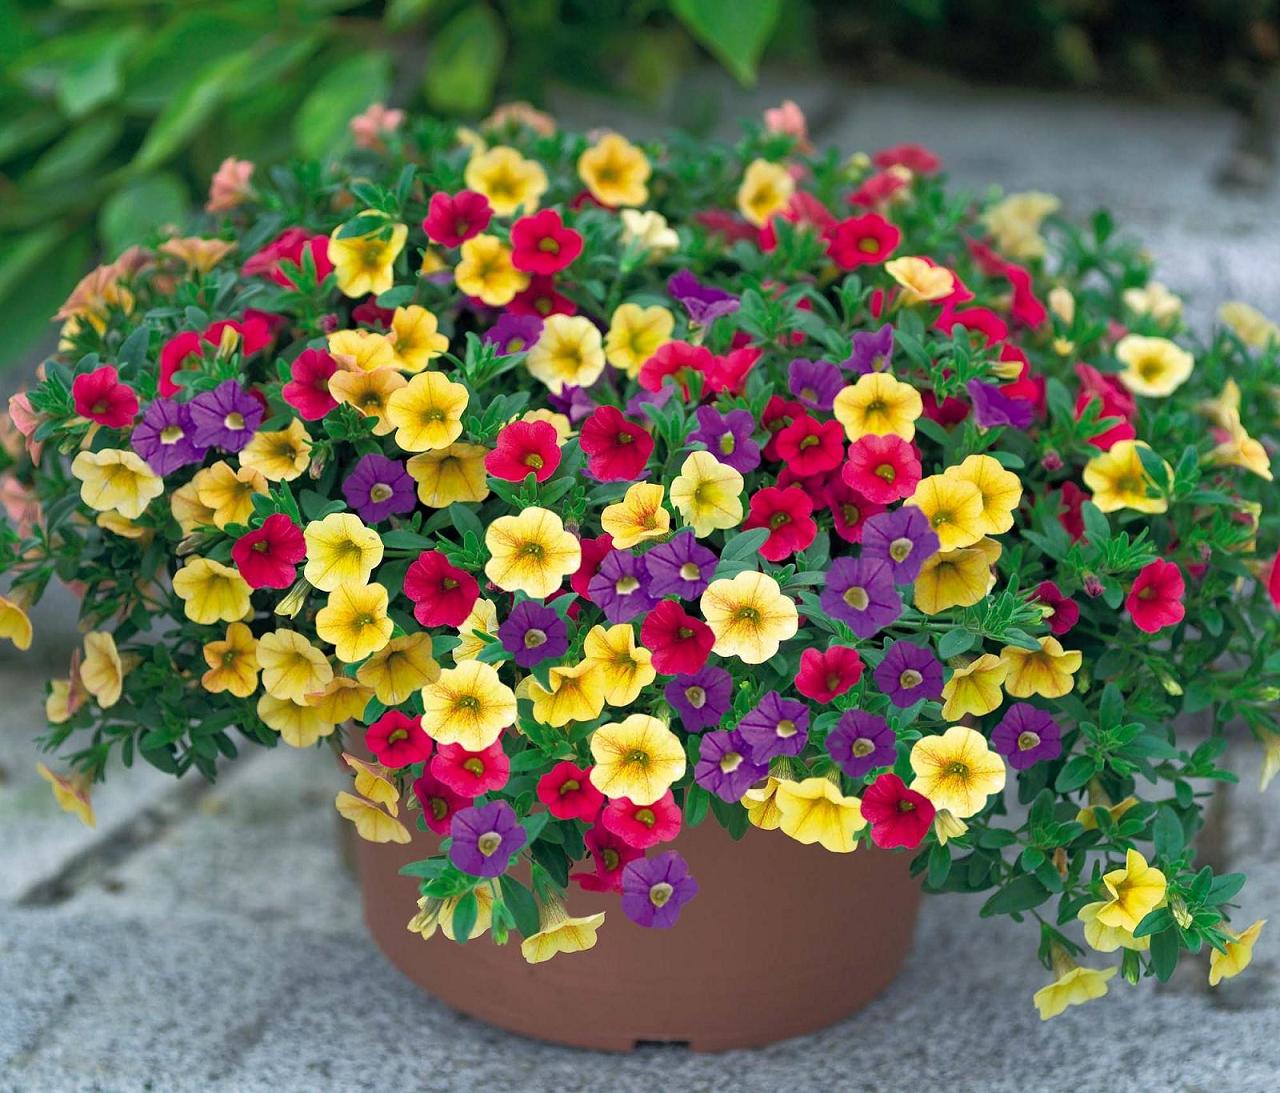 Hoa triệu chuông đa màu sắc thích hợp để trồng nơi ban công nhà bạn